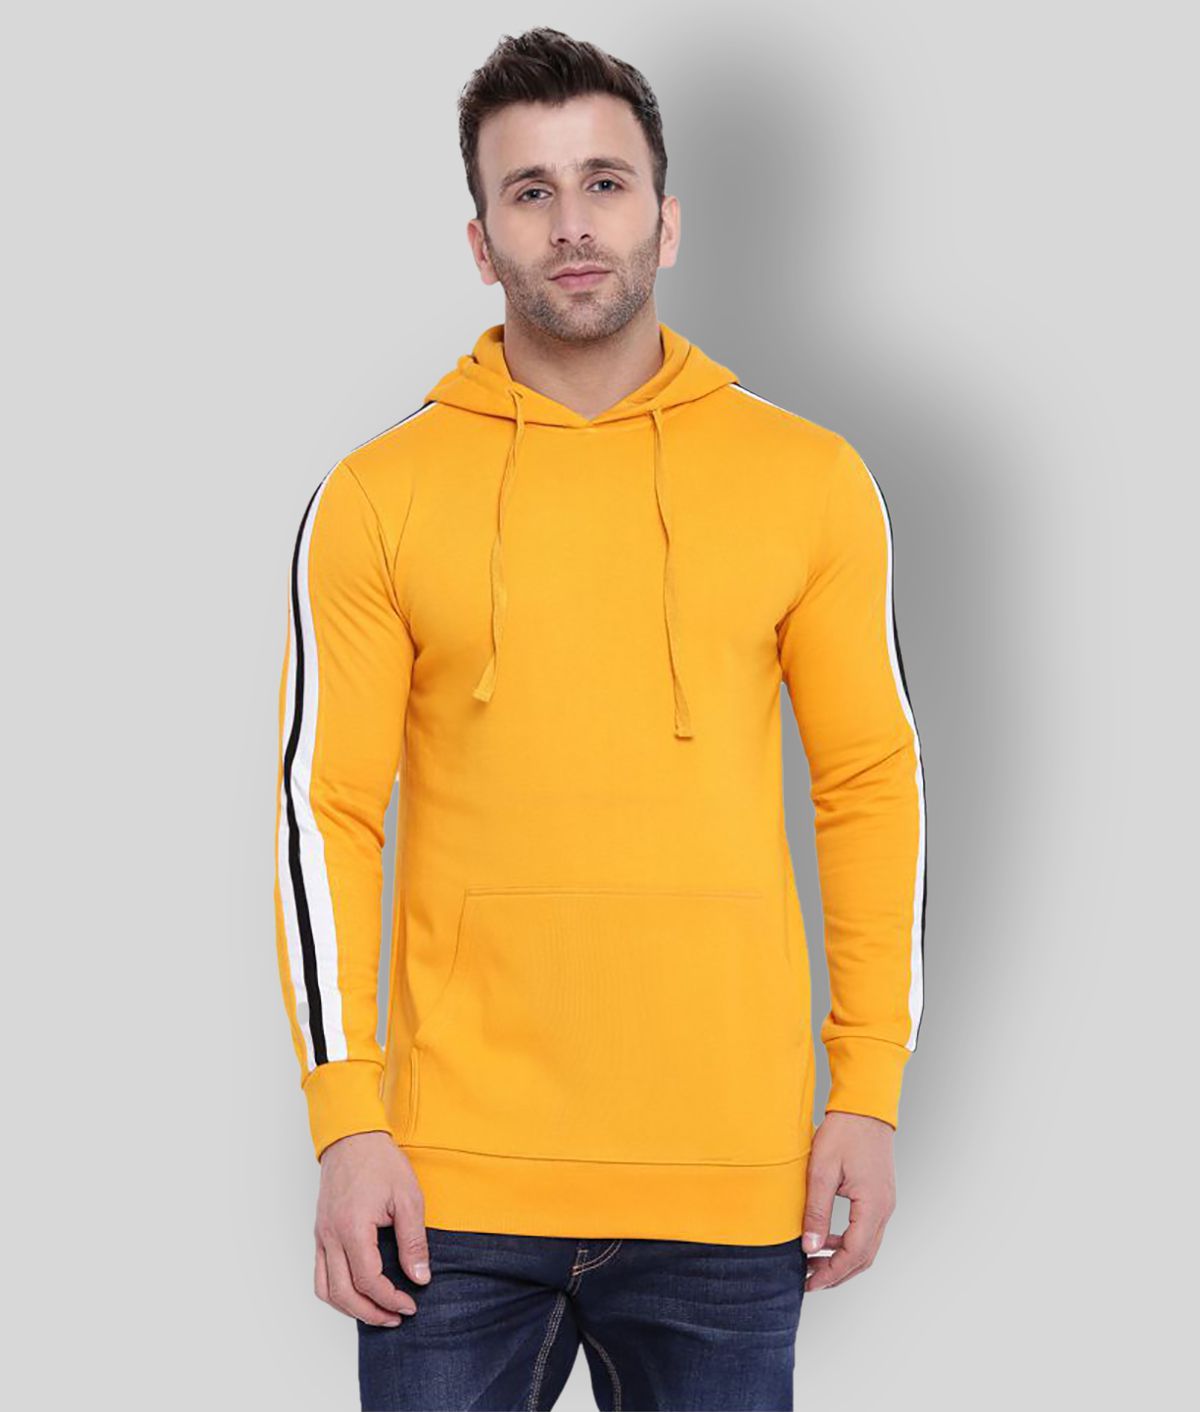 Gritstones Yellow Hooded Sweatshirt